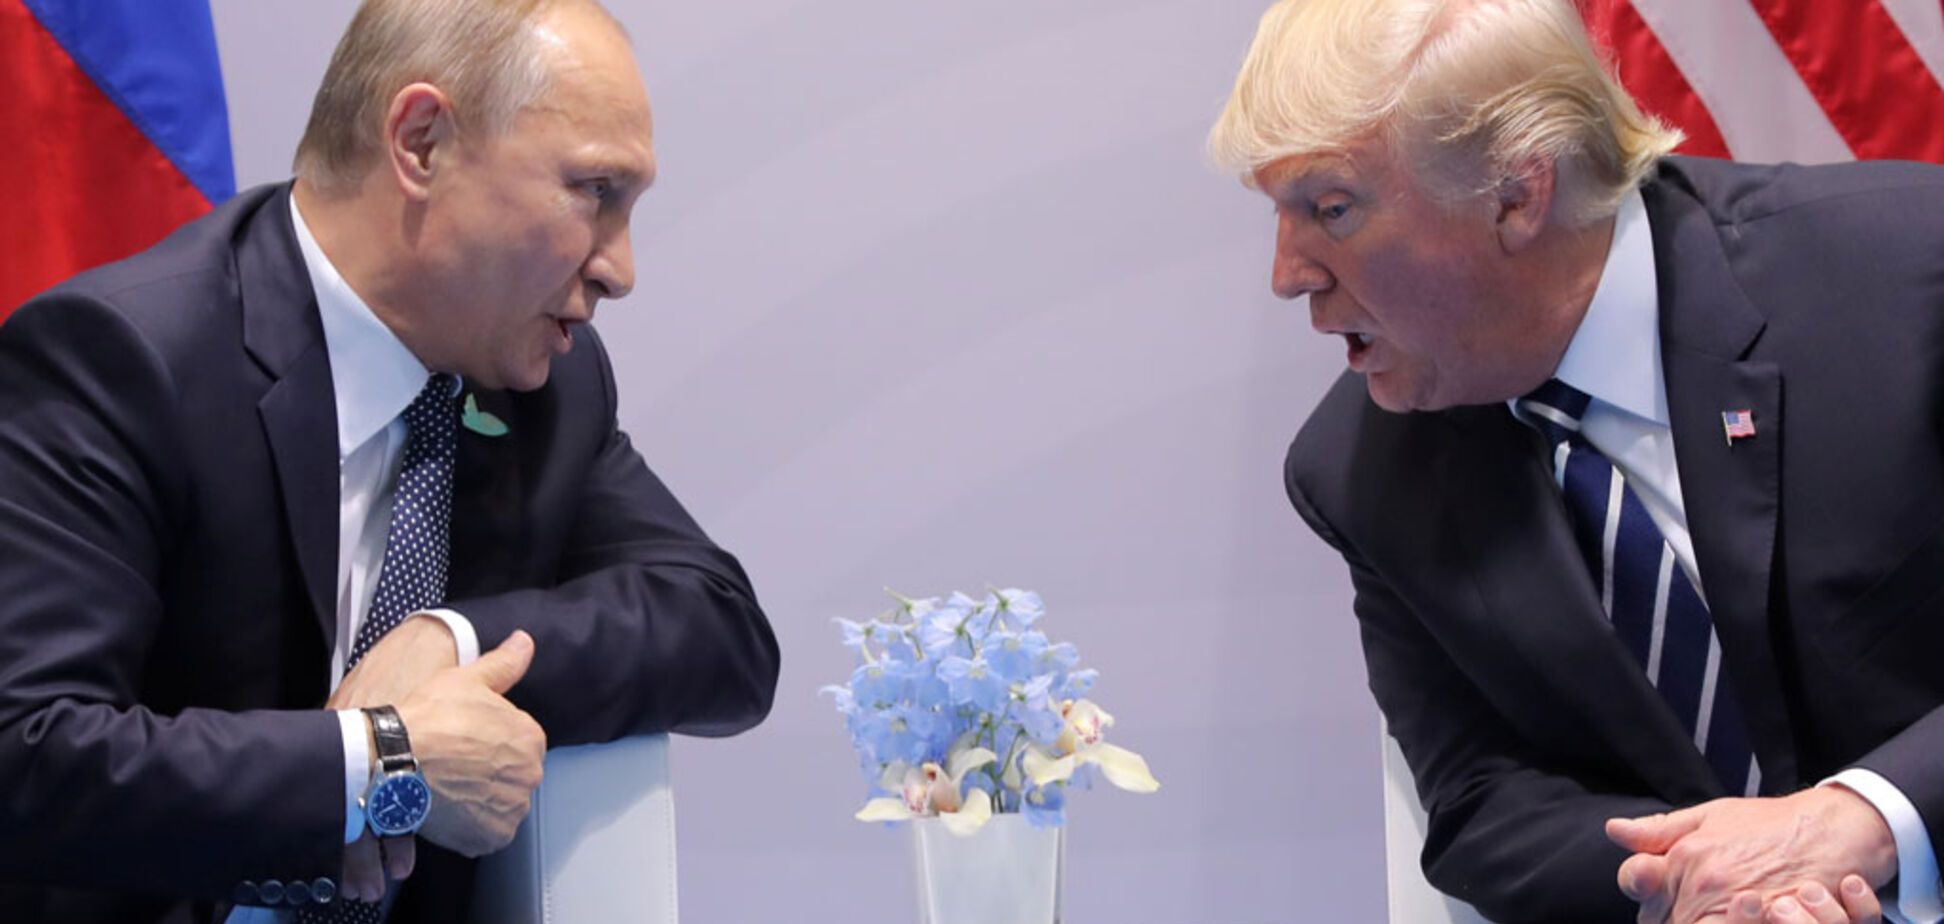 'Они одинаковы!' Политик вскрыл тайную связь между Путиным и Трампом